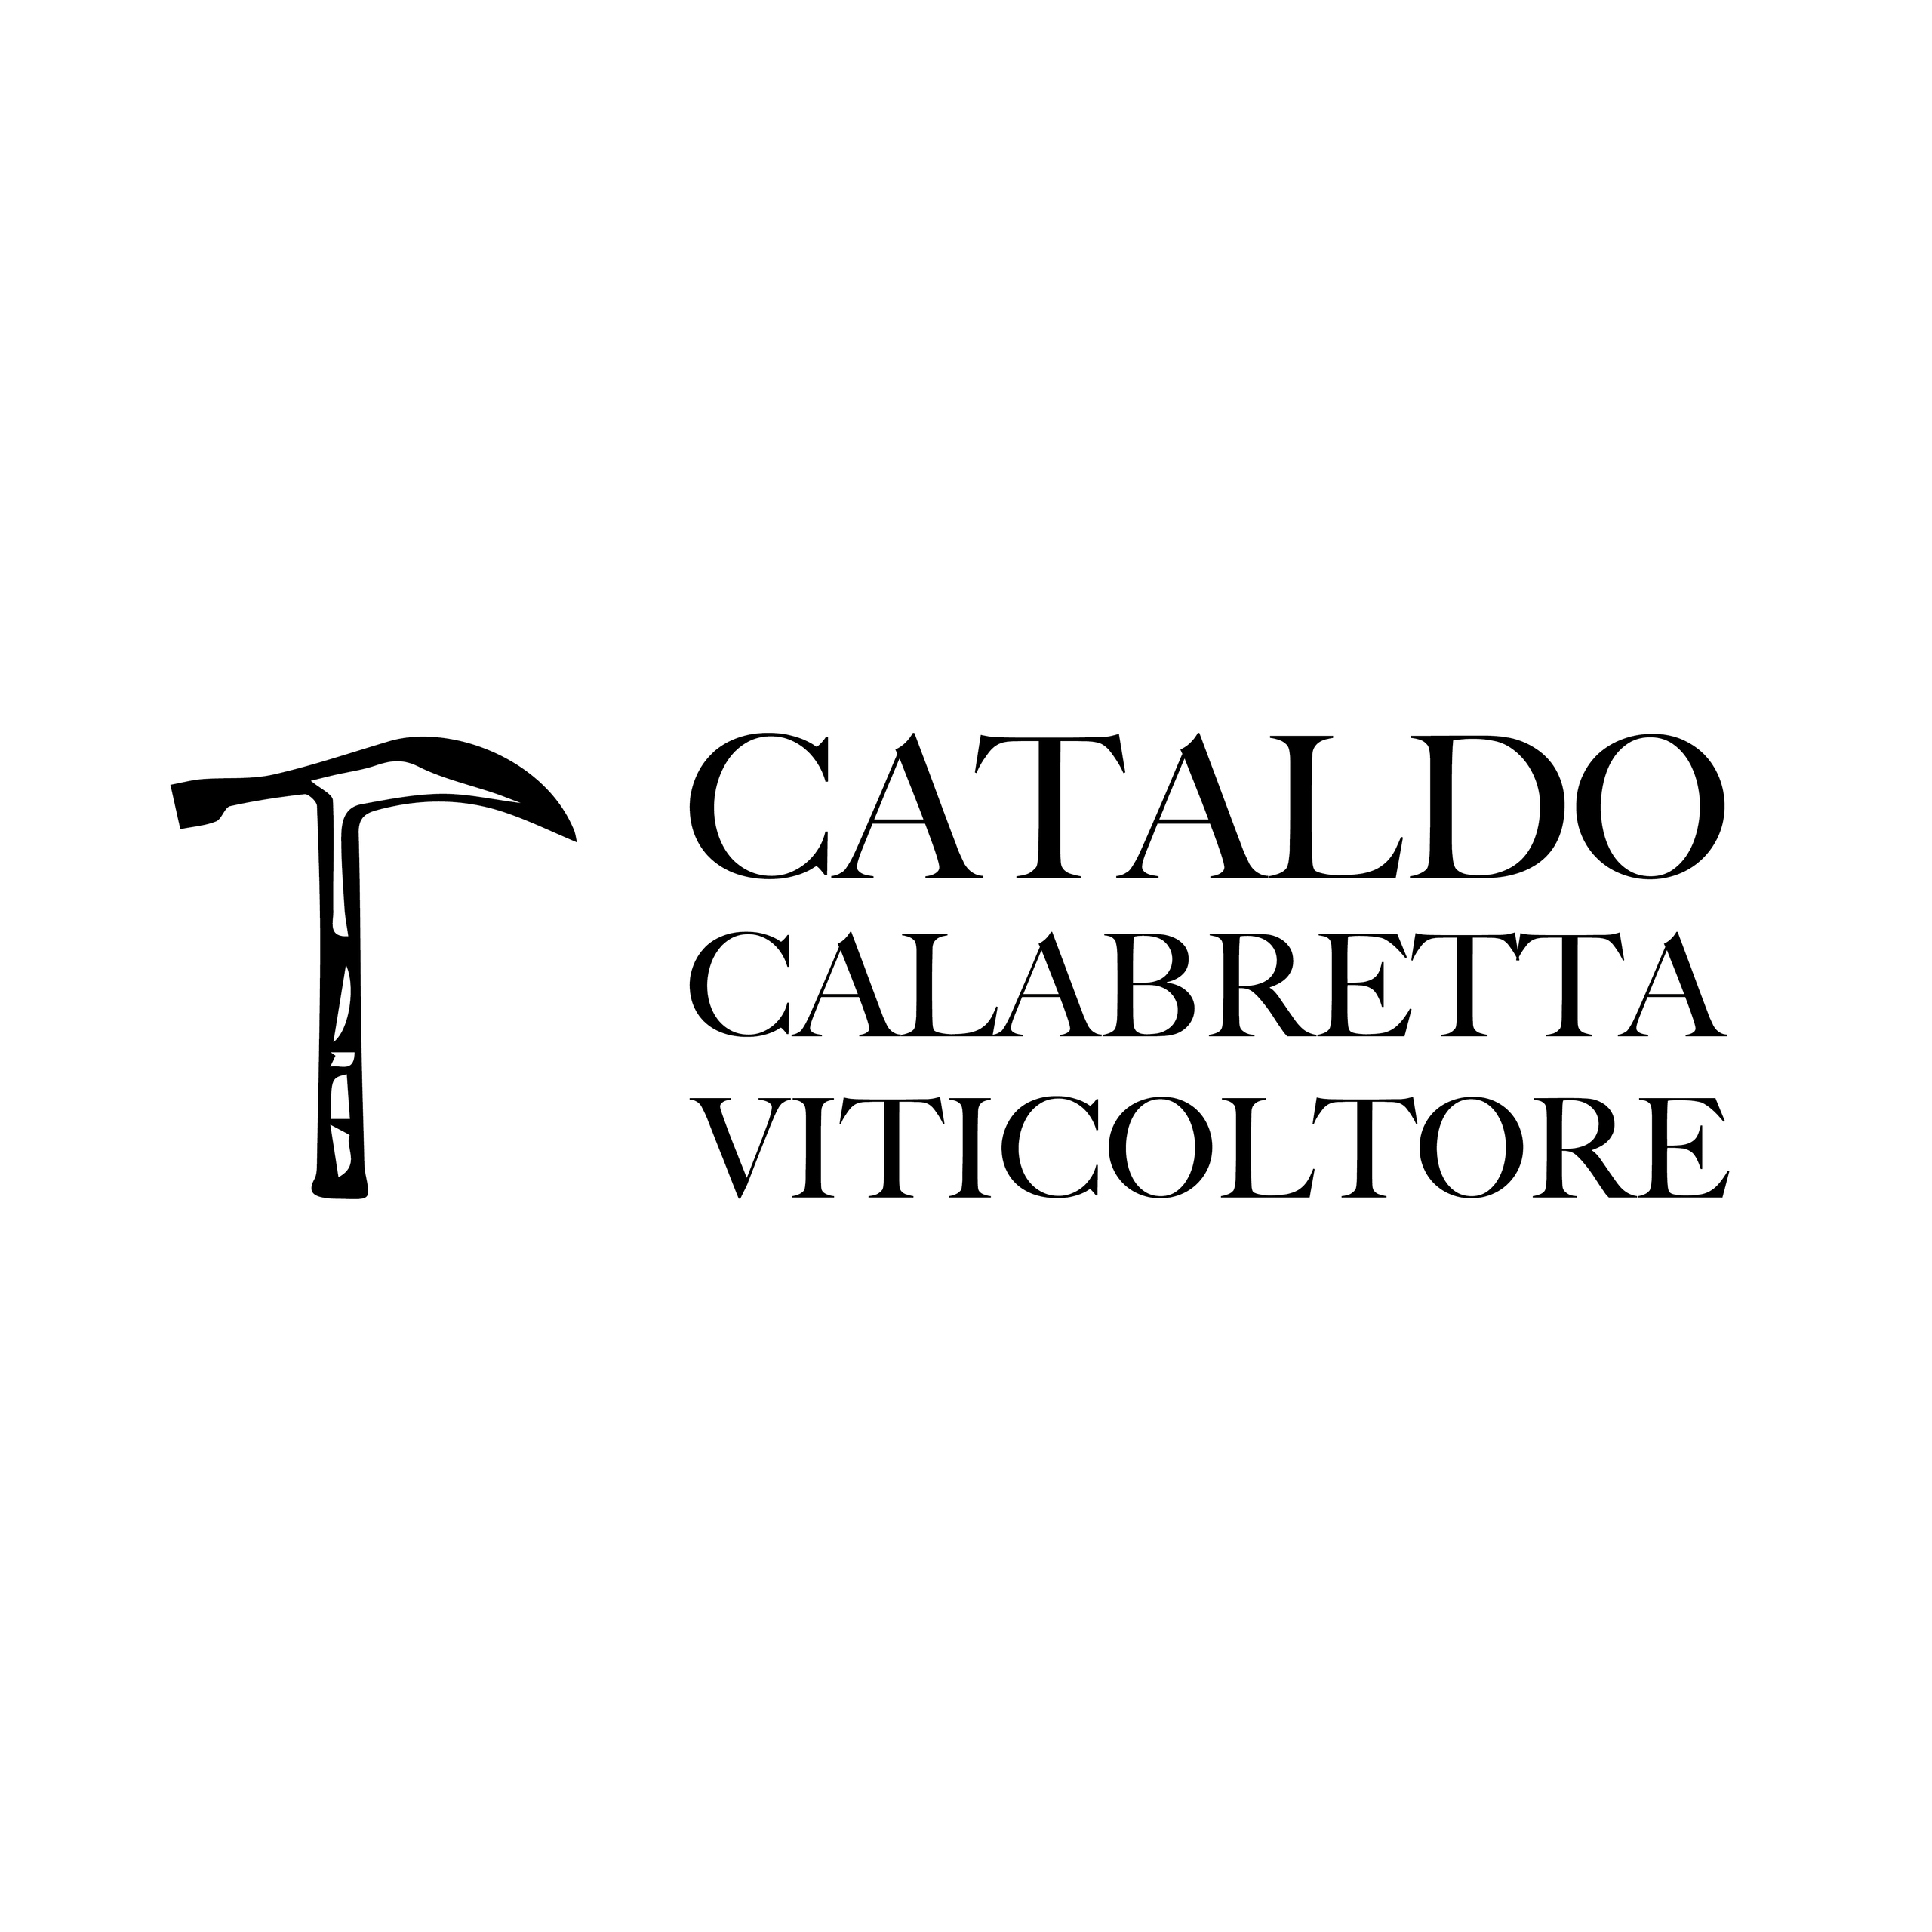 Cataldo Calabretta